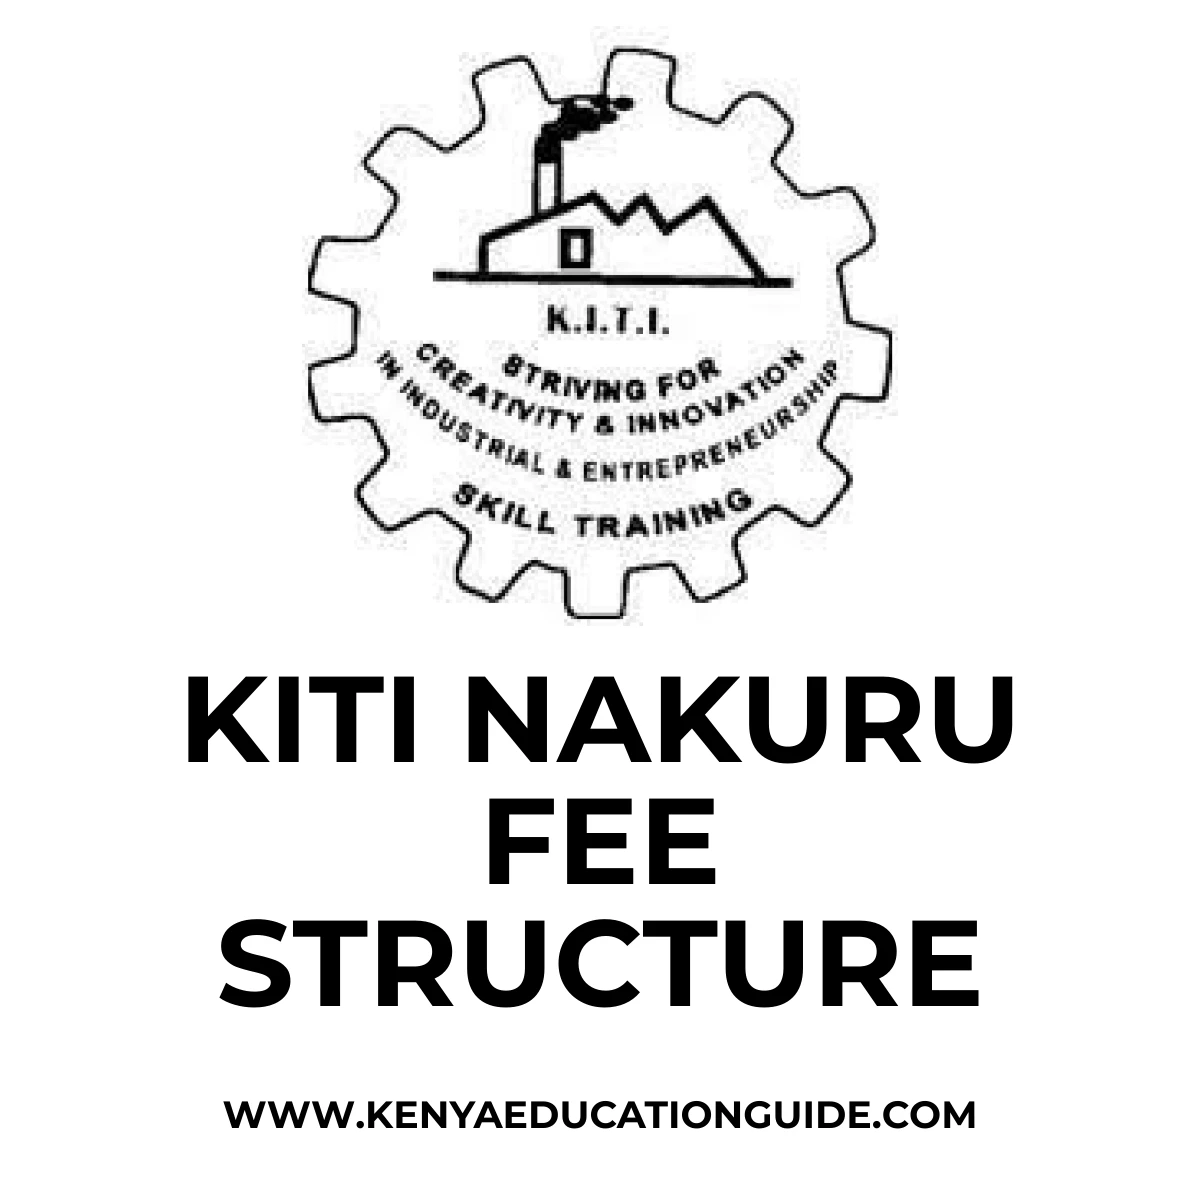 KITI Nakuru Fee Structure